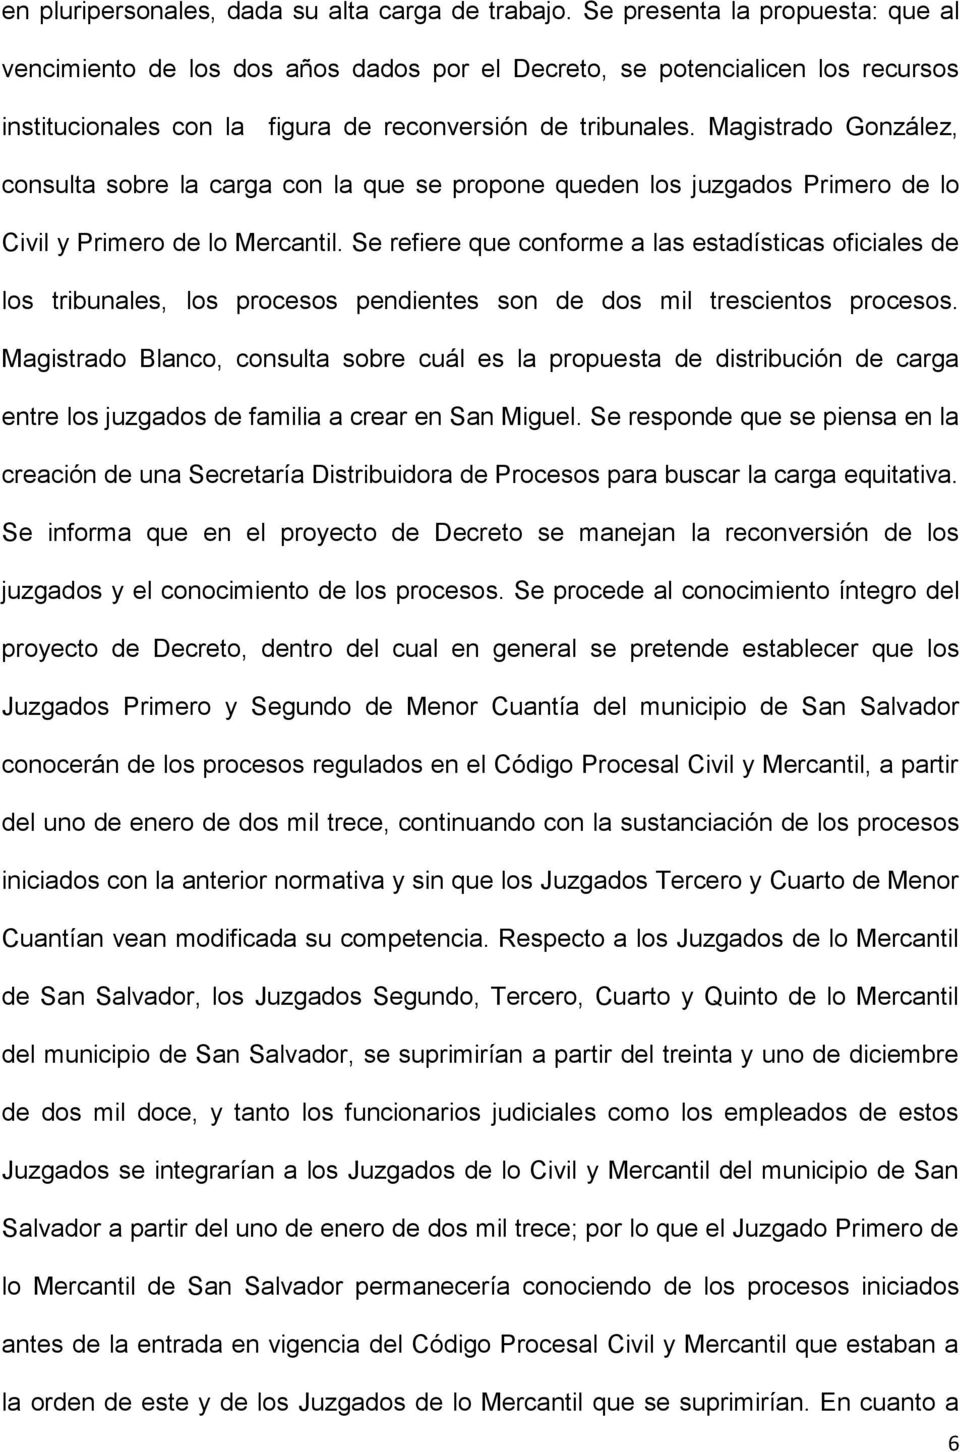 Magistrado González, consulta sobre la carga con la que se propone queden los juzgados Primero de lo Civil y Primero de lo Mercantil.